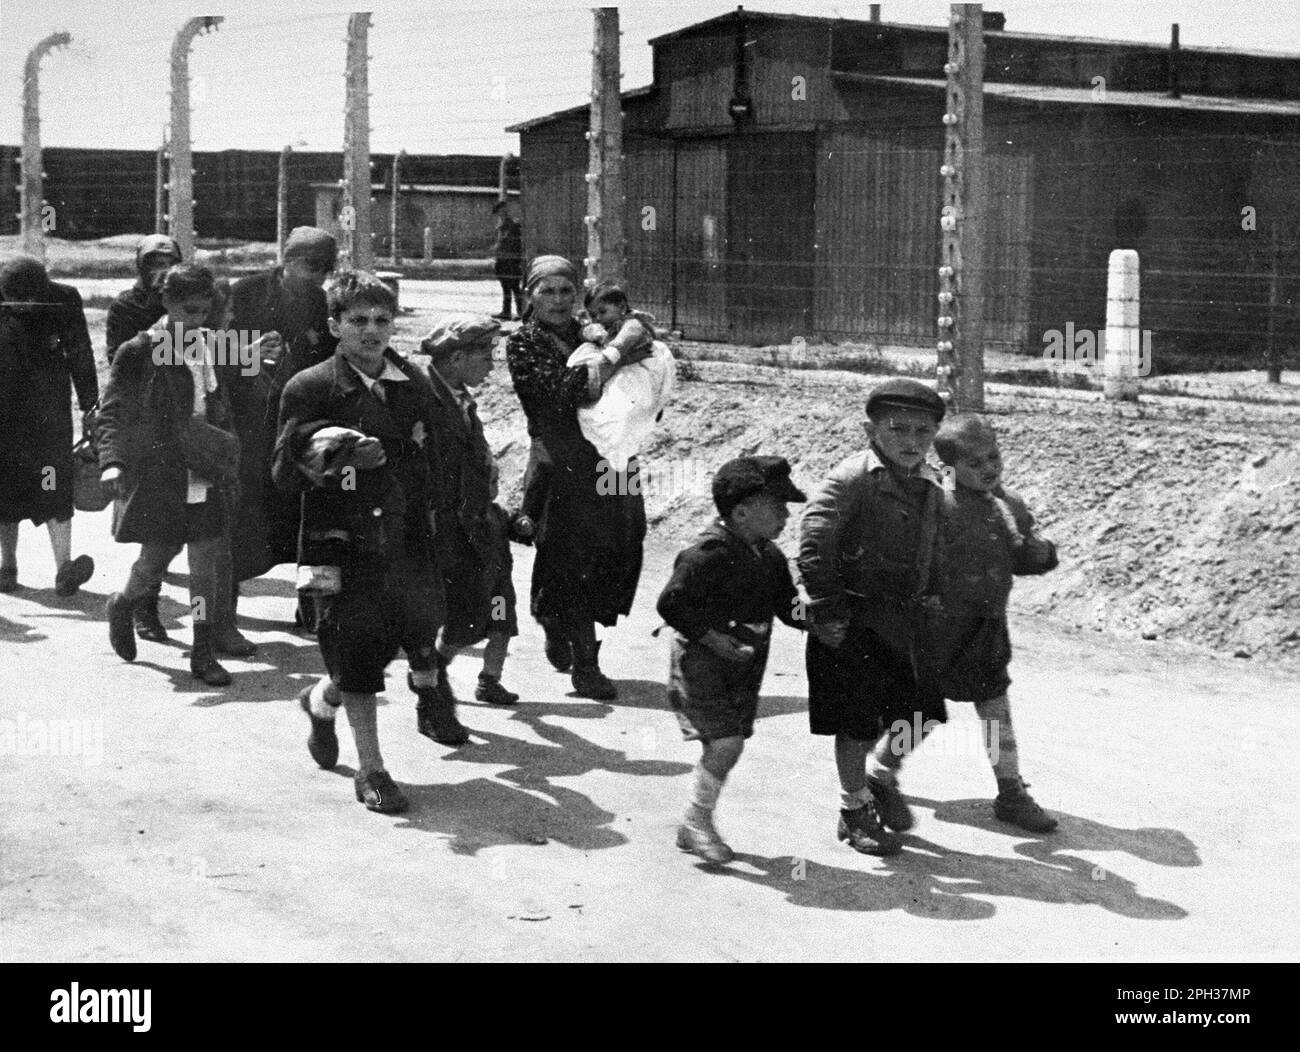 Kinder aus Karpaten-Ruthenie gehen in Richtung Gaskammern. Nach dem Auswahlverfahren auf dem Bahnhofsplattform wurden die zum Sterben verurteilten Personen direkt zu den Gaskammern geführt. Stockfoto